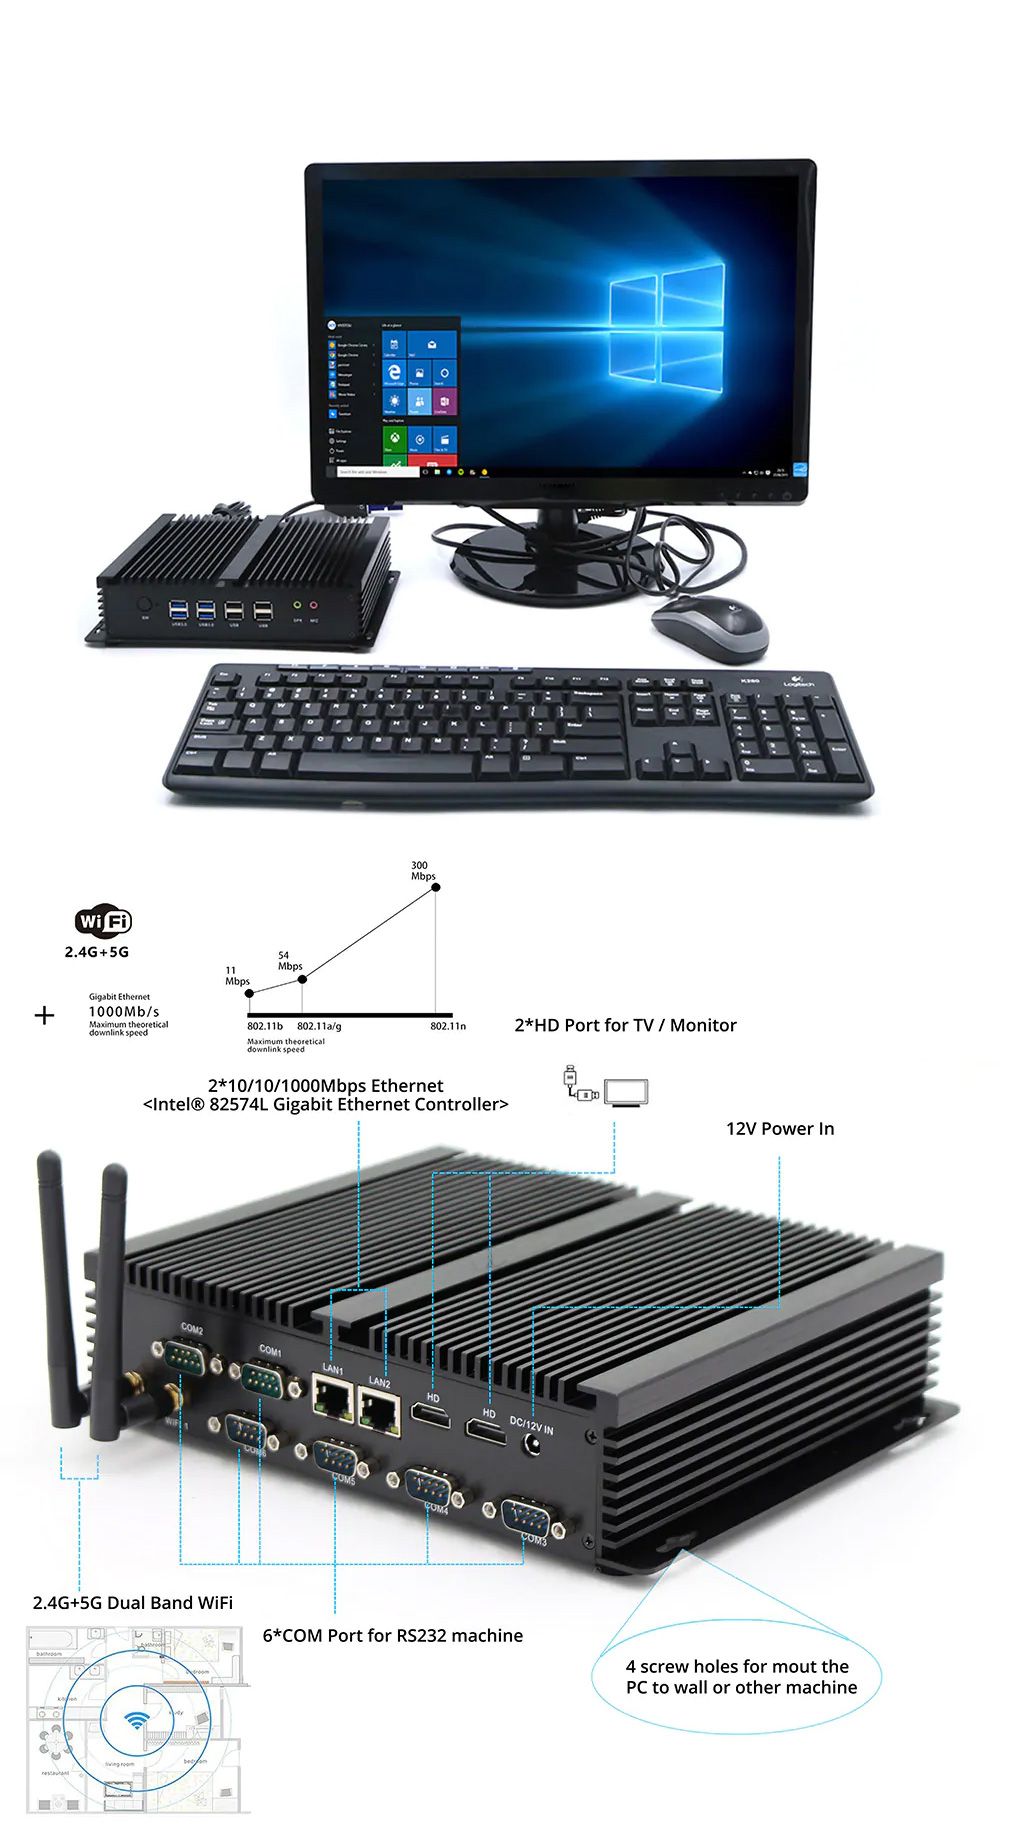 Eglobal-GK-Mini-Pc-I5-4200U-4G-RAM-128G256G-SSD-Wifi-DDR3-Windows-78910-Linux-16GHz-Fanless-Mini-Des-1547528